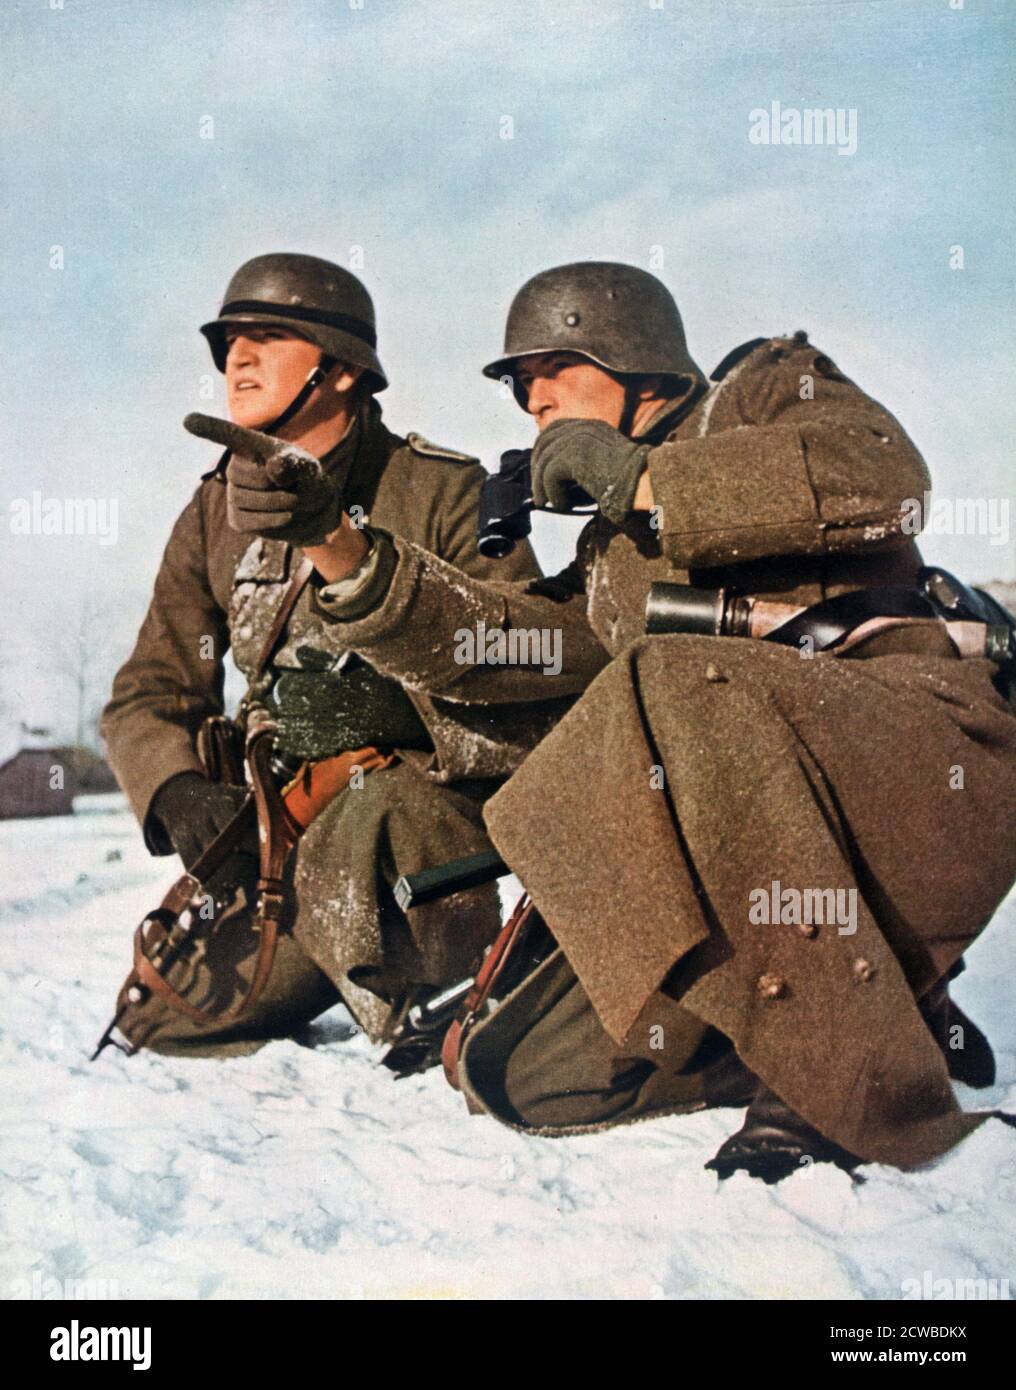 Soldats allemands, Seconde Guerre mondiale, 1942. Un imprimé de signal, mars 1942. Signal est un magazine publié par le troisième Reich allemand de 1940 à 1945. Par le photographe allemand Grimm. Banque D'Images